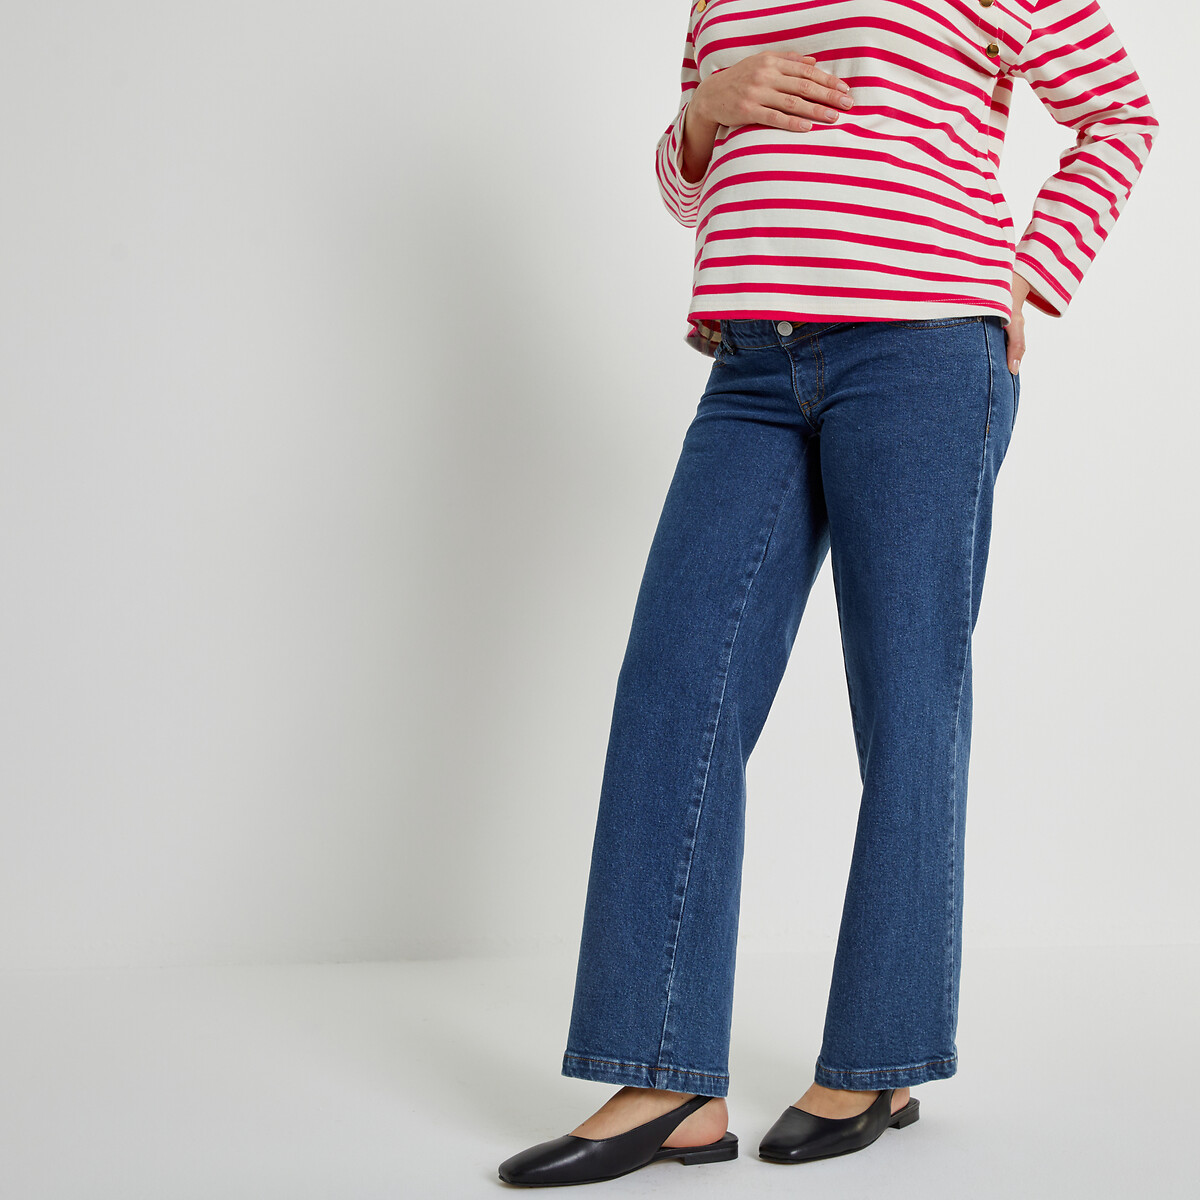 брюки прямые для периода беременности в полоску 40 fr 46 rus синий Джинсы широкие для периода беременности 40 (FR) - 46 (RUS) синий